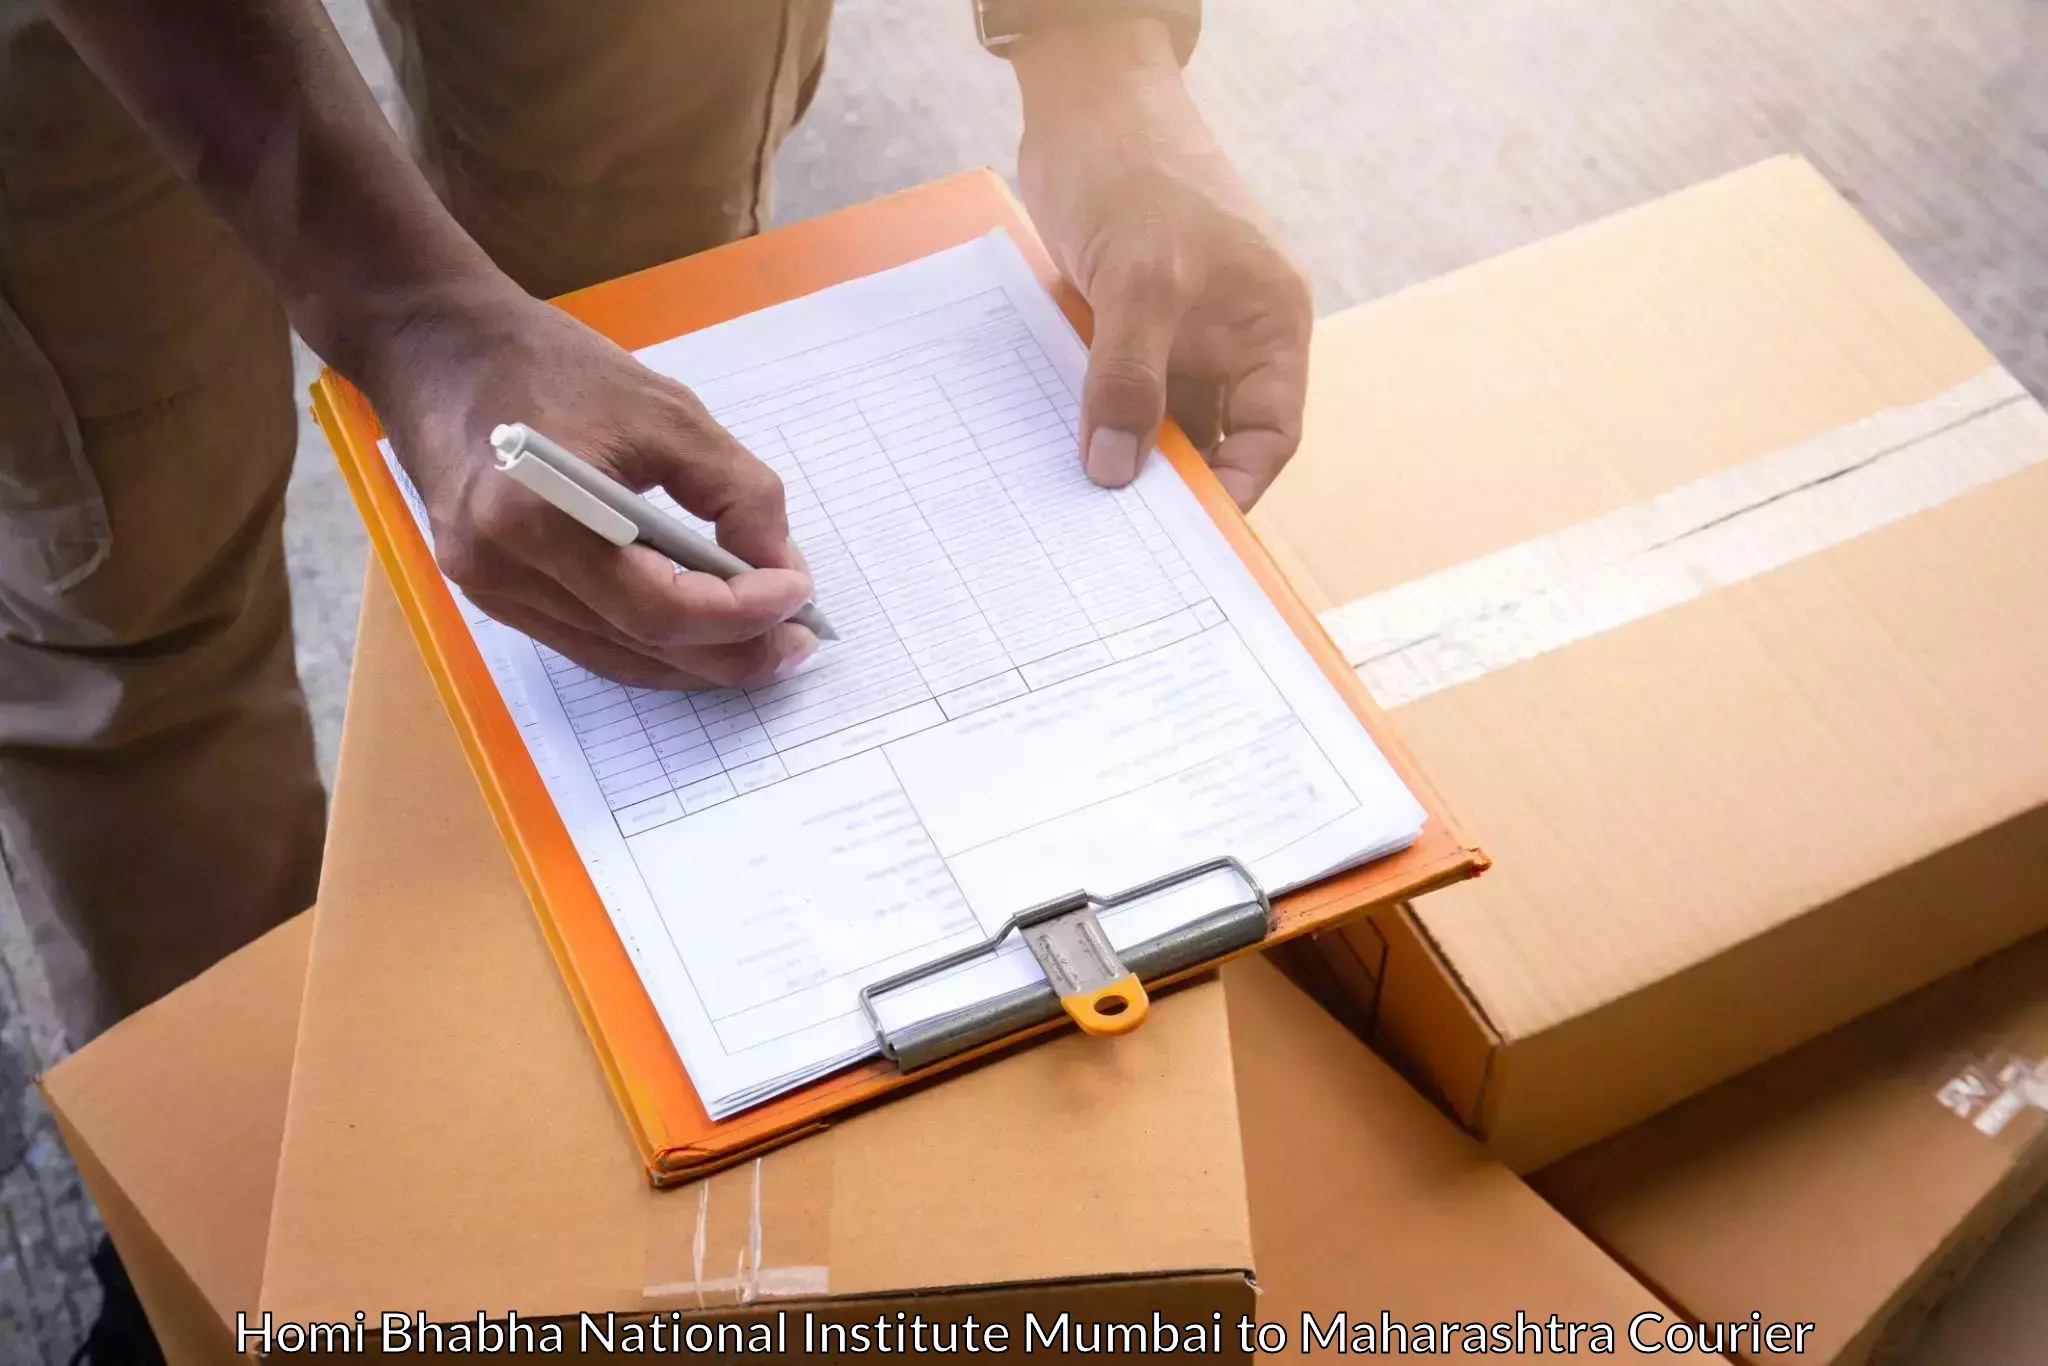 High-capacity parcel service Homi Bhabha National Institute Mumbai to Kudus